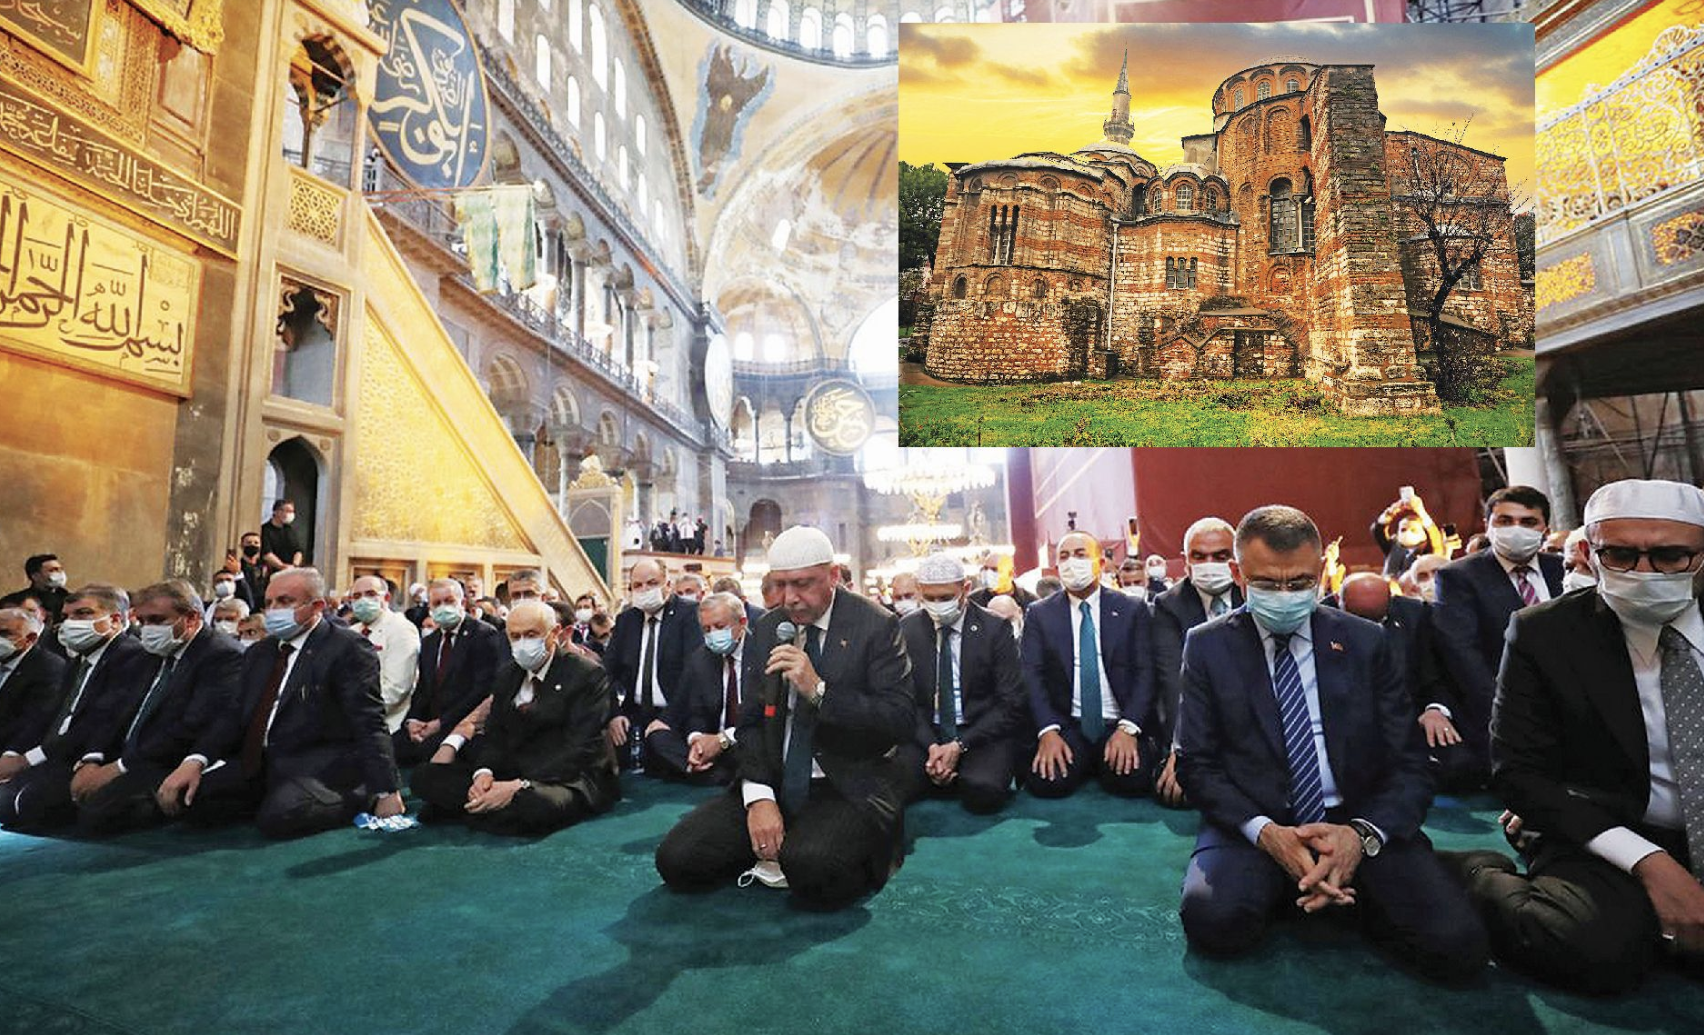 Συστηματική και διαχρονική κακοποίηση των μνημείων στην Τουρκία! Ο «σουλτάνος» πραγματοποιεί πολιτιστική γενοκτονία